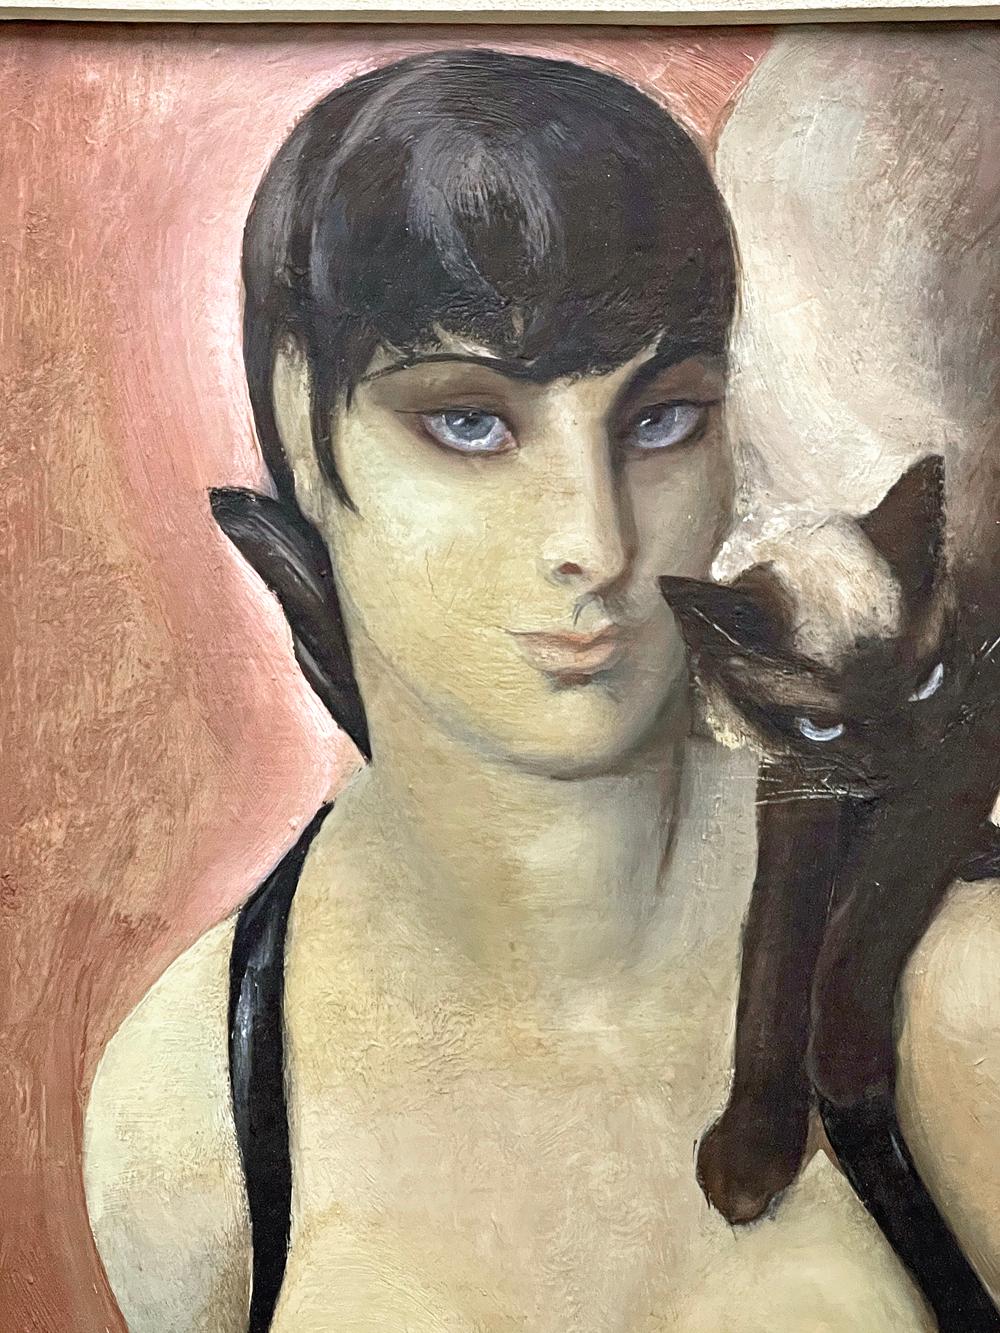 L'artiste à l'origine de ce portrait Art déco original et saisissant - Agnes Tait - met clairement l'accent sur les parallèles entre une femme et son chat siamois, tous deux représentés avec des yeux bleus fortement ombragés et des cheveux courts et